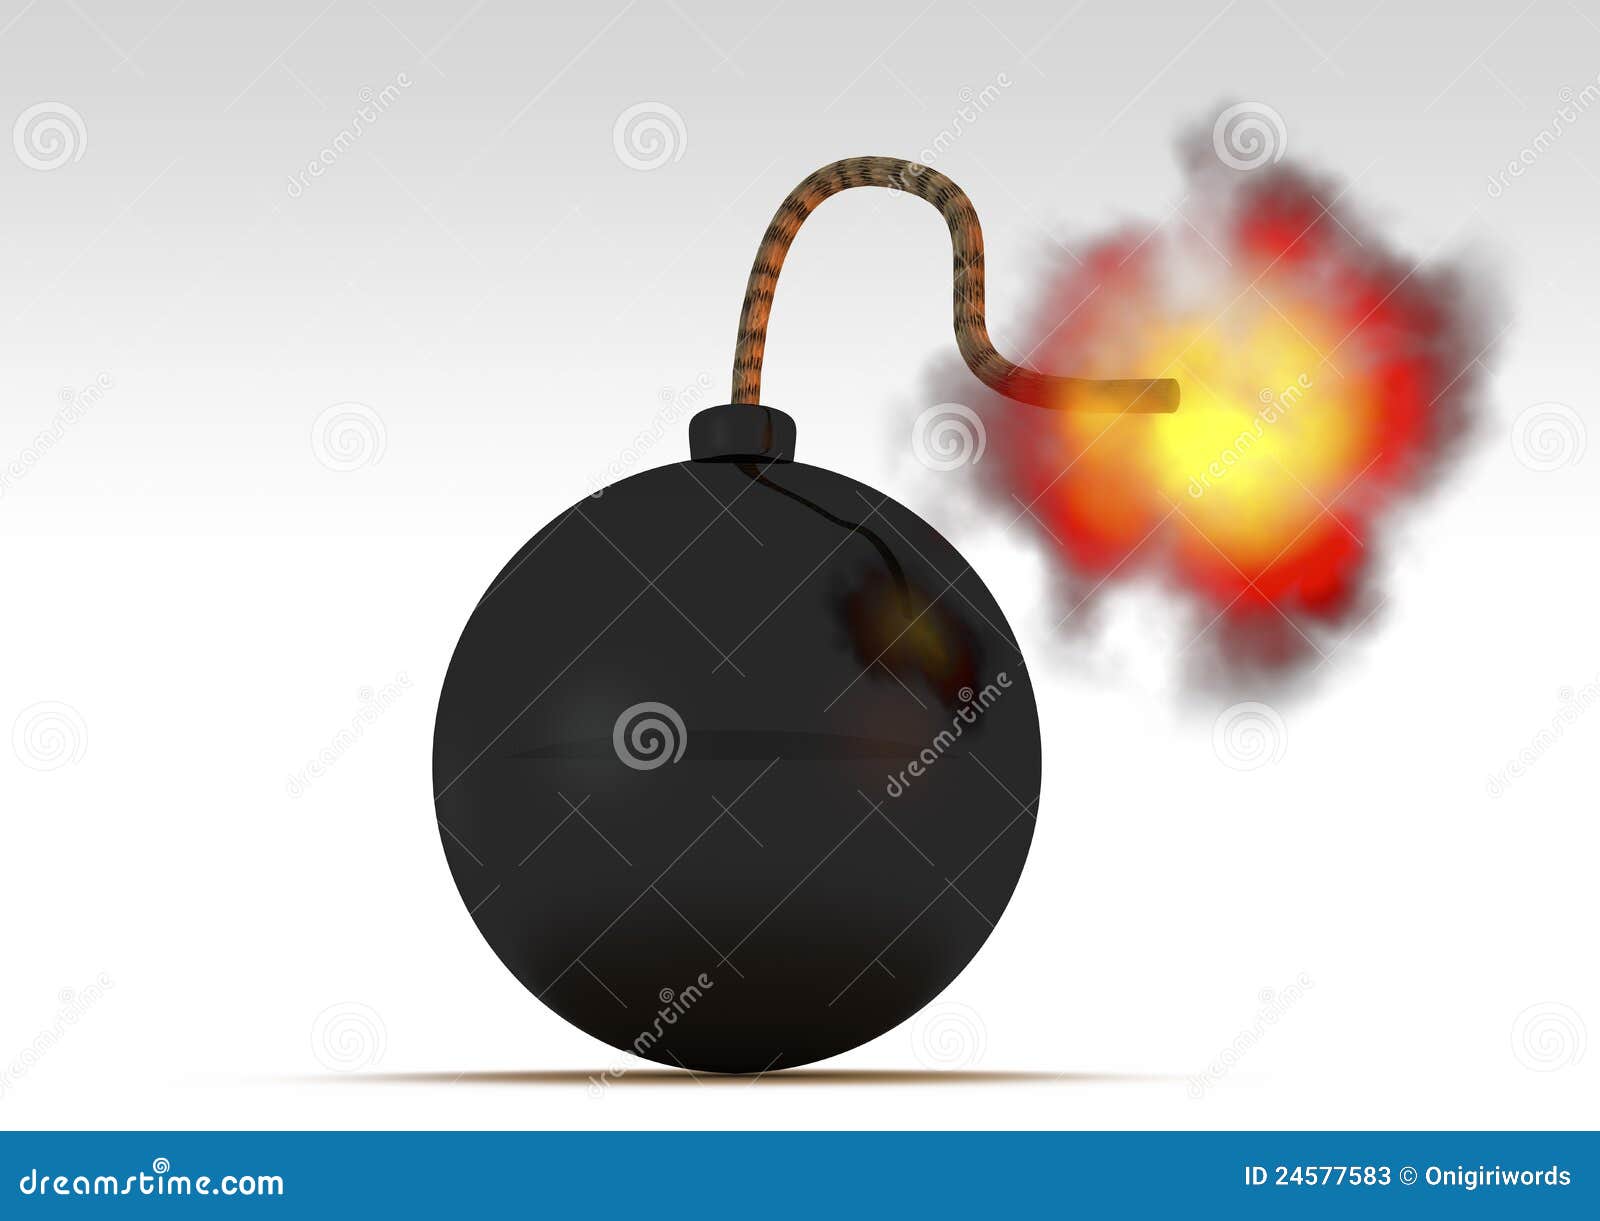 Ilustración de una bomba.